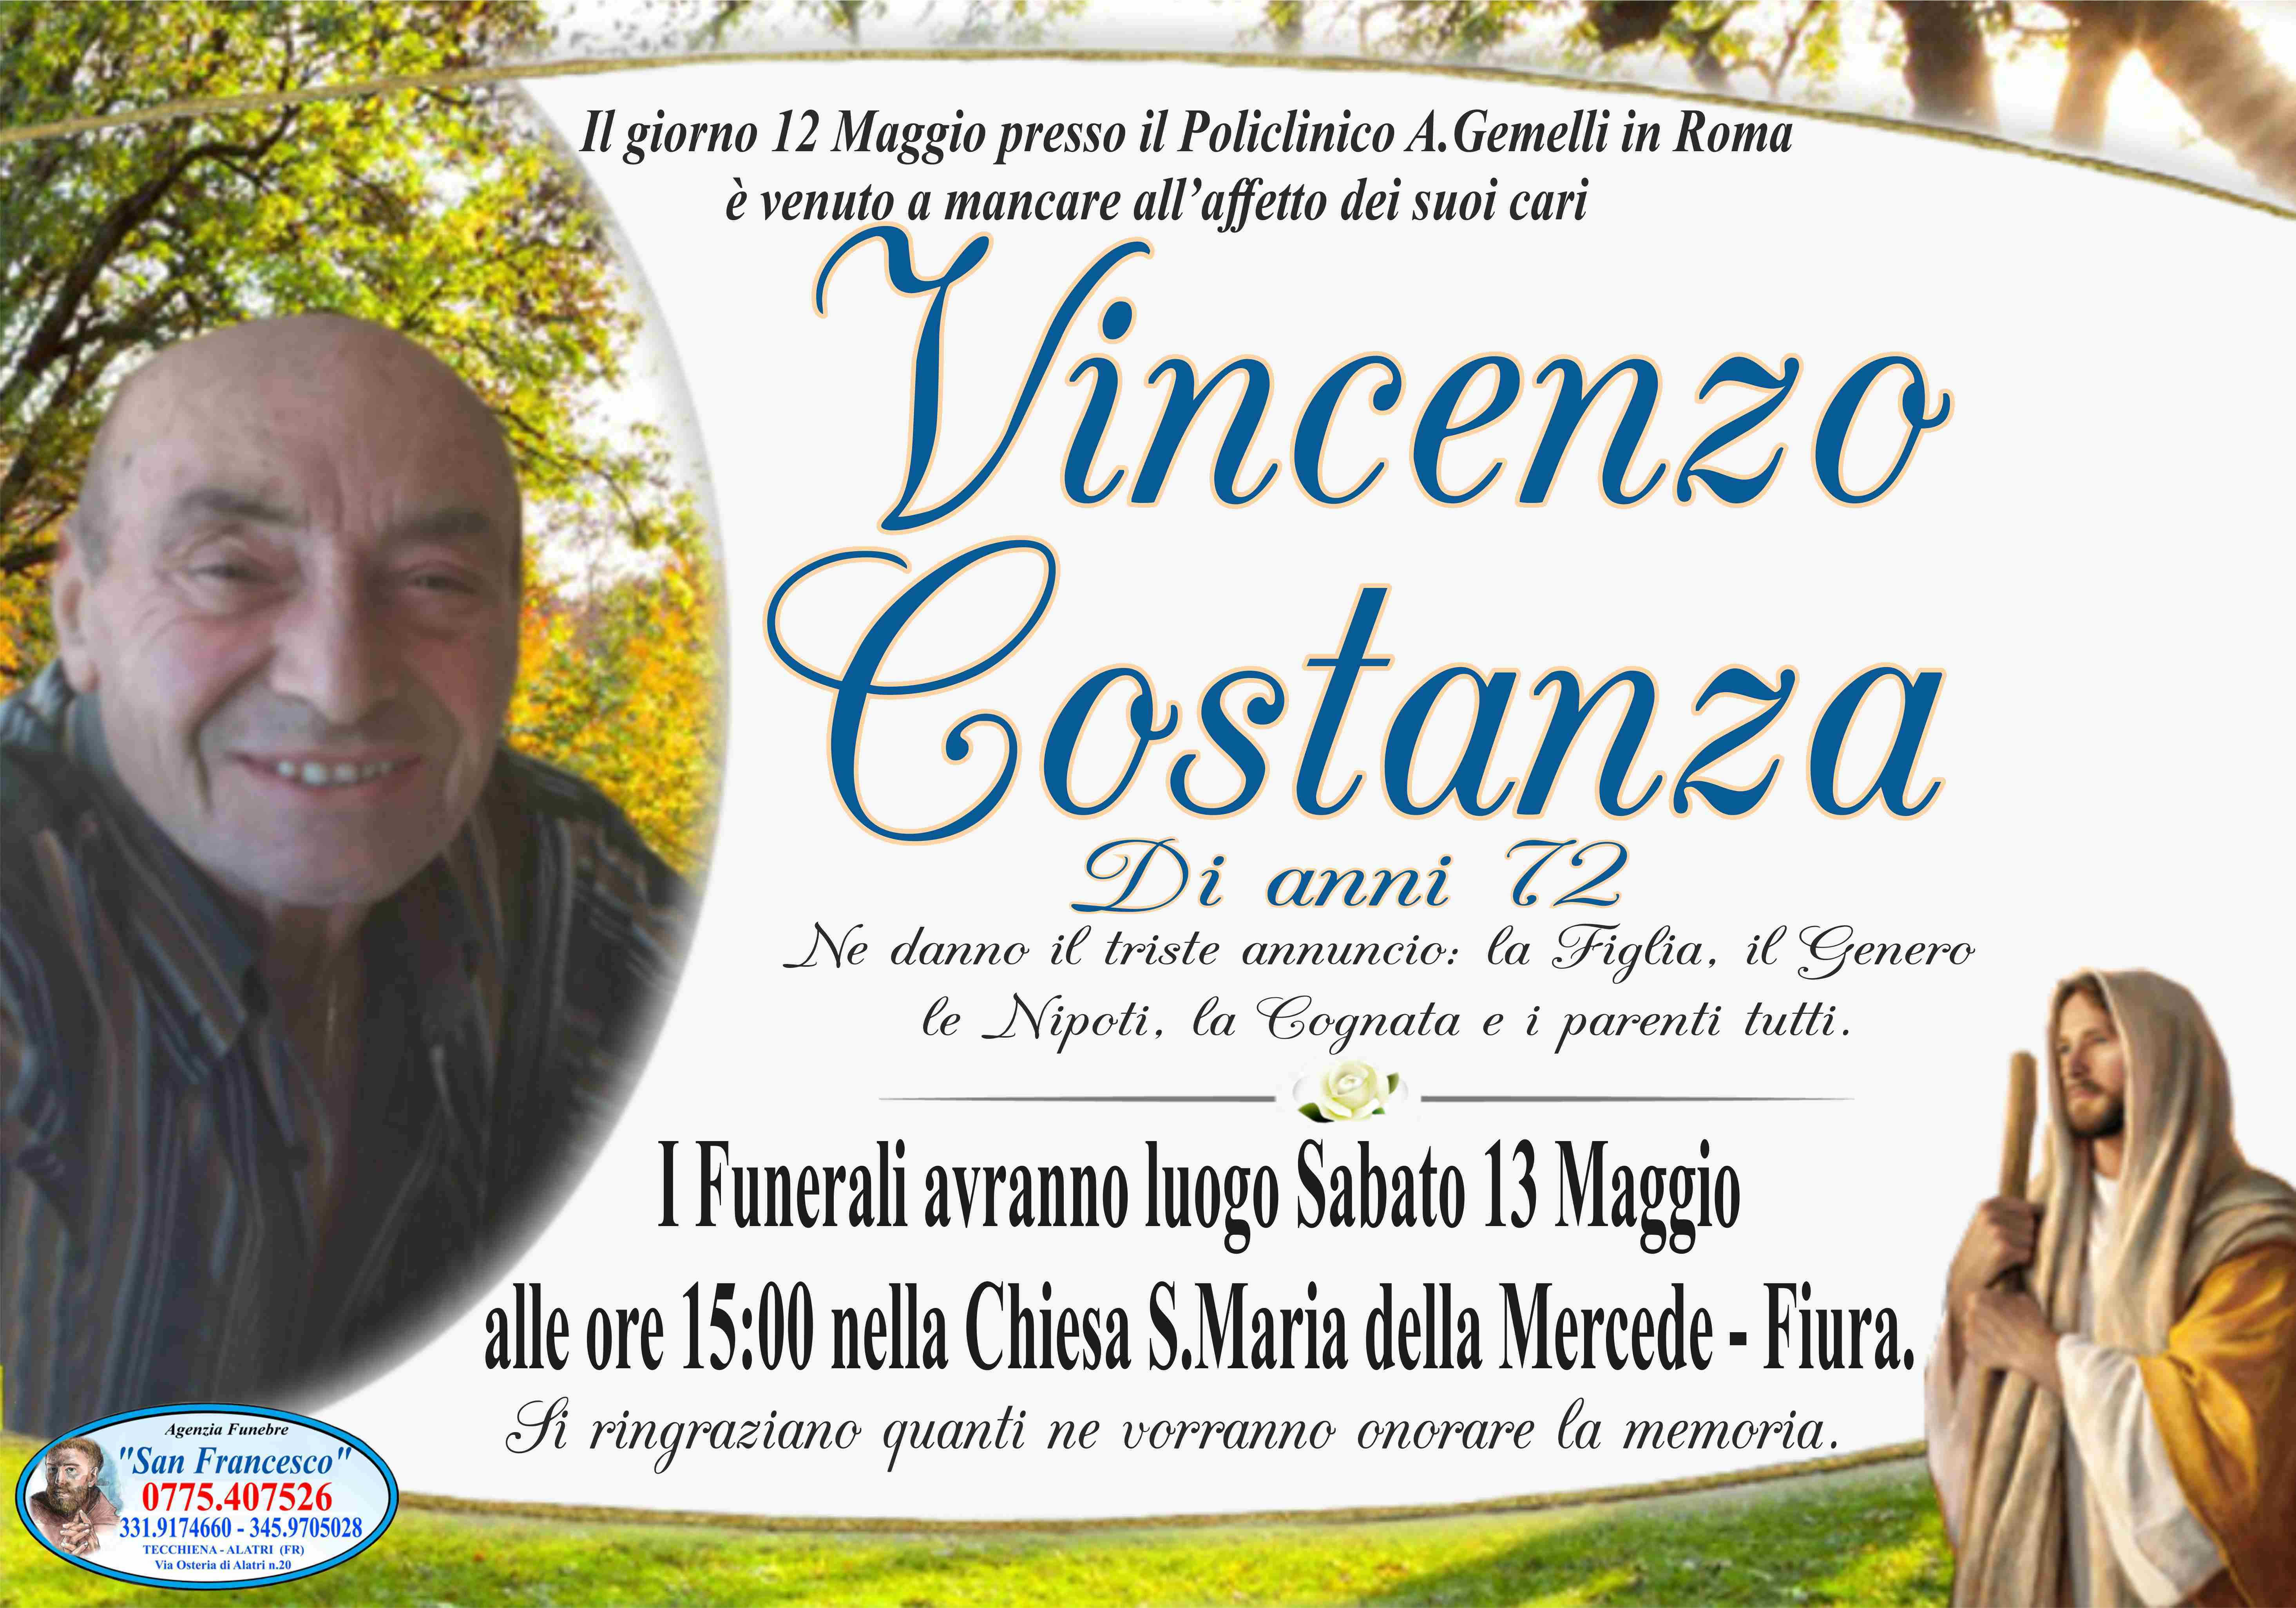 Vincenzo Costanza